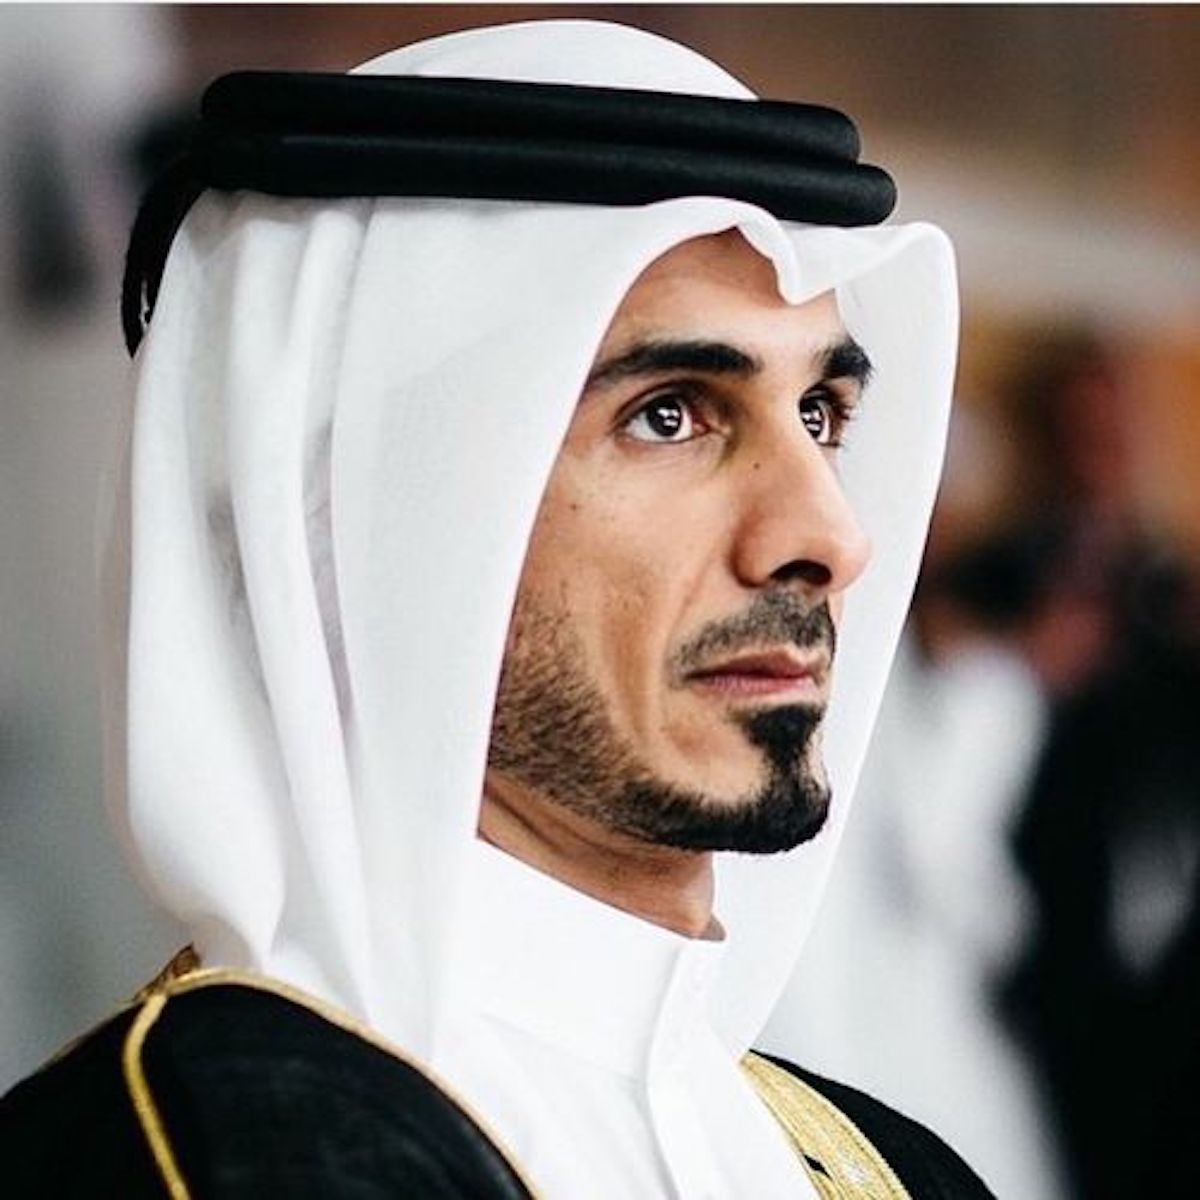 Шейх эмир. Шейх Джассим. Шейх Хамад Бин Халифа. Халифа Бин Хамад принц Катара. Шейх Джасим Бин Хамад Аль Тани.